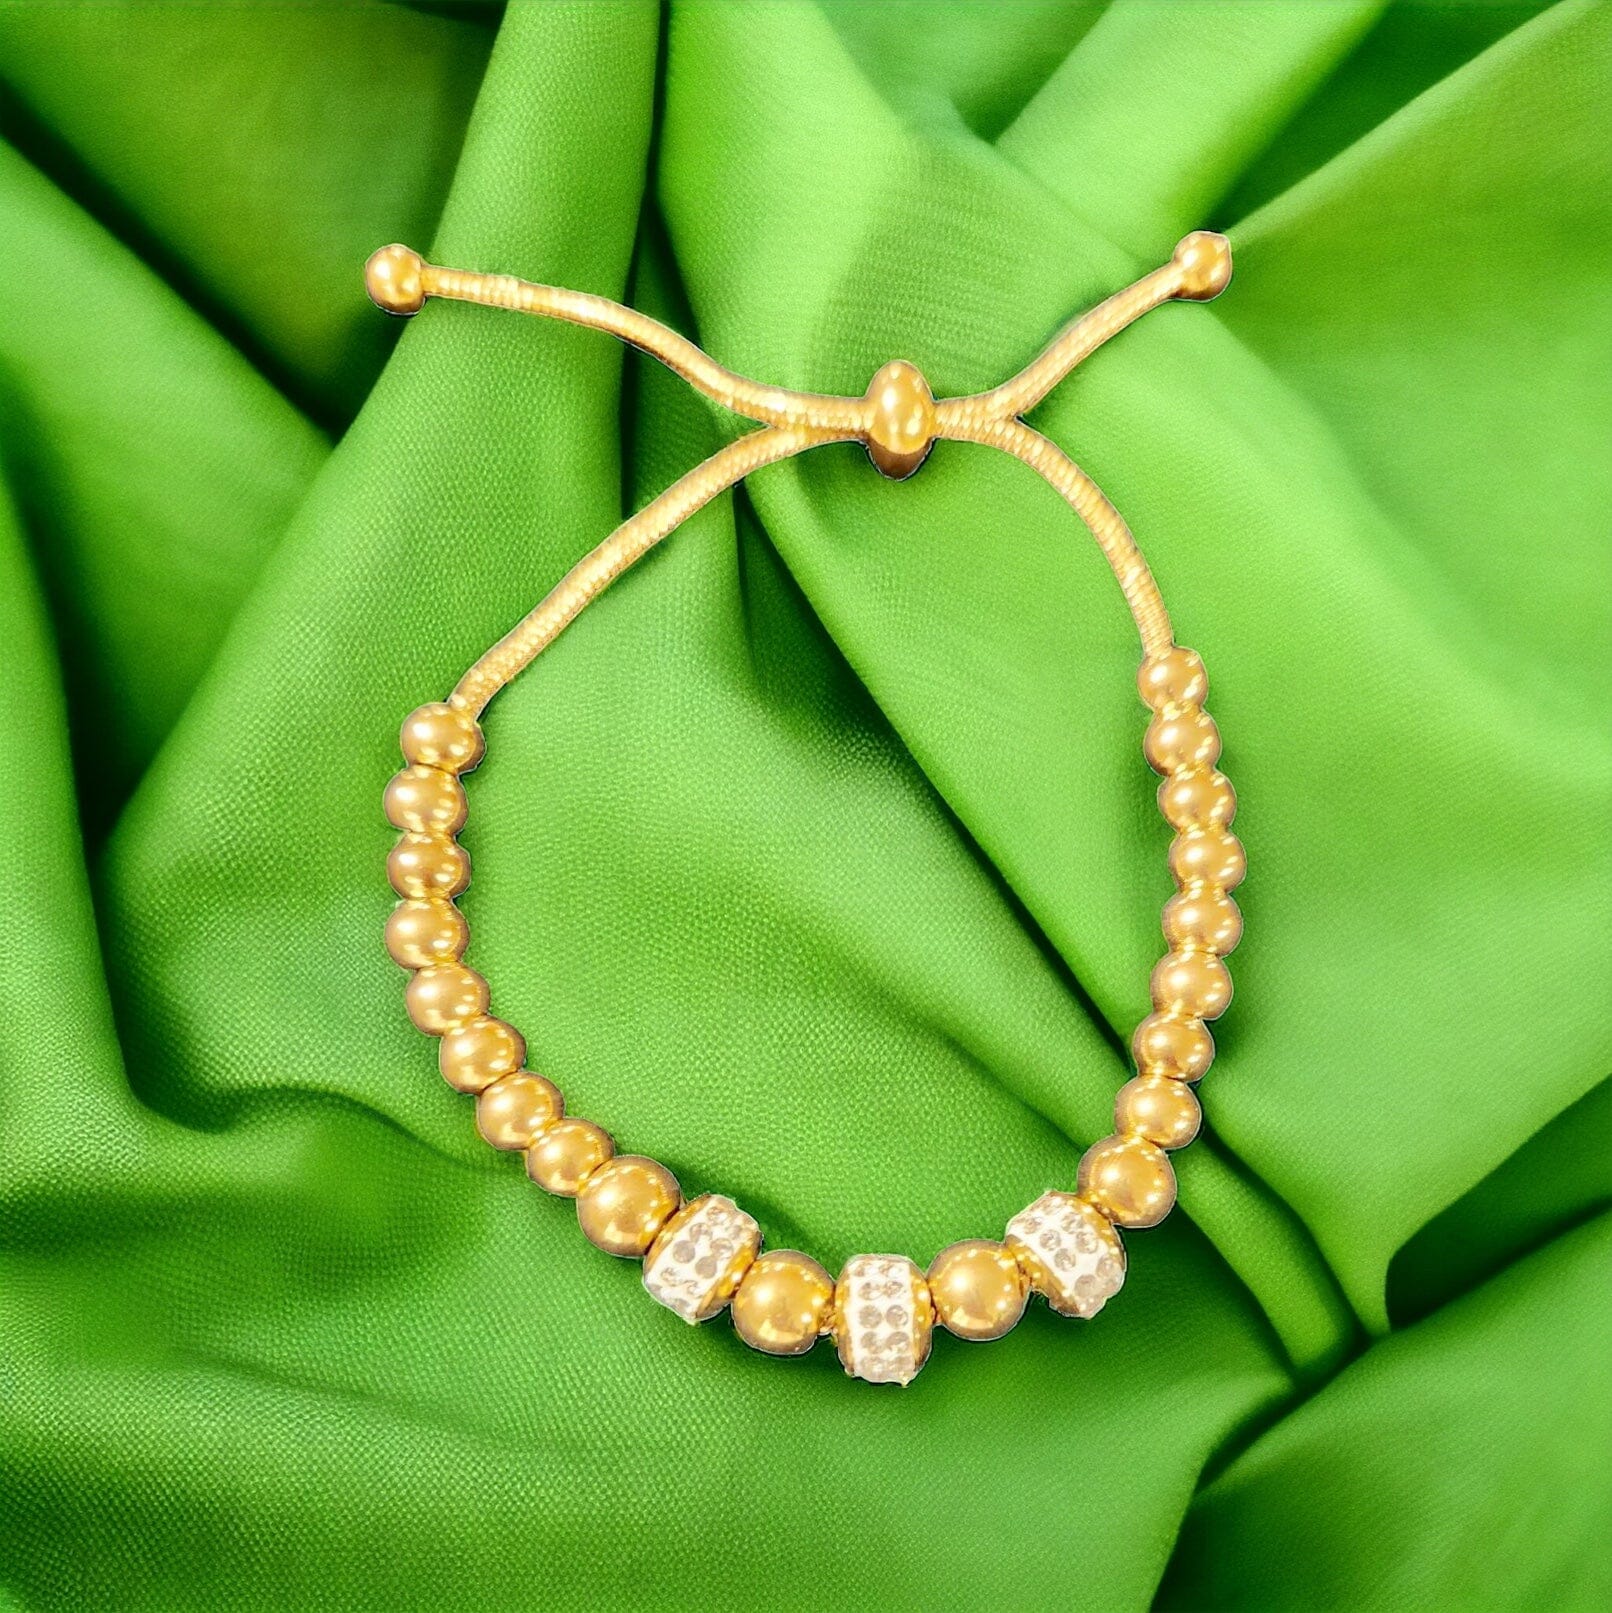 Nellie Gold Silver Ball Adjustable Bracelet Bracelets Trendzio Jewelry 